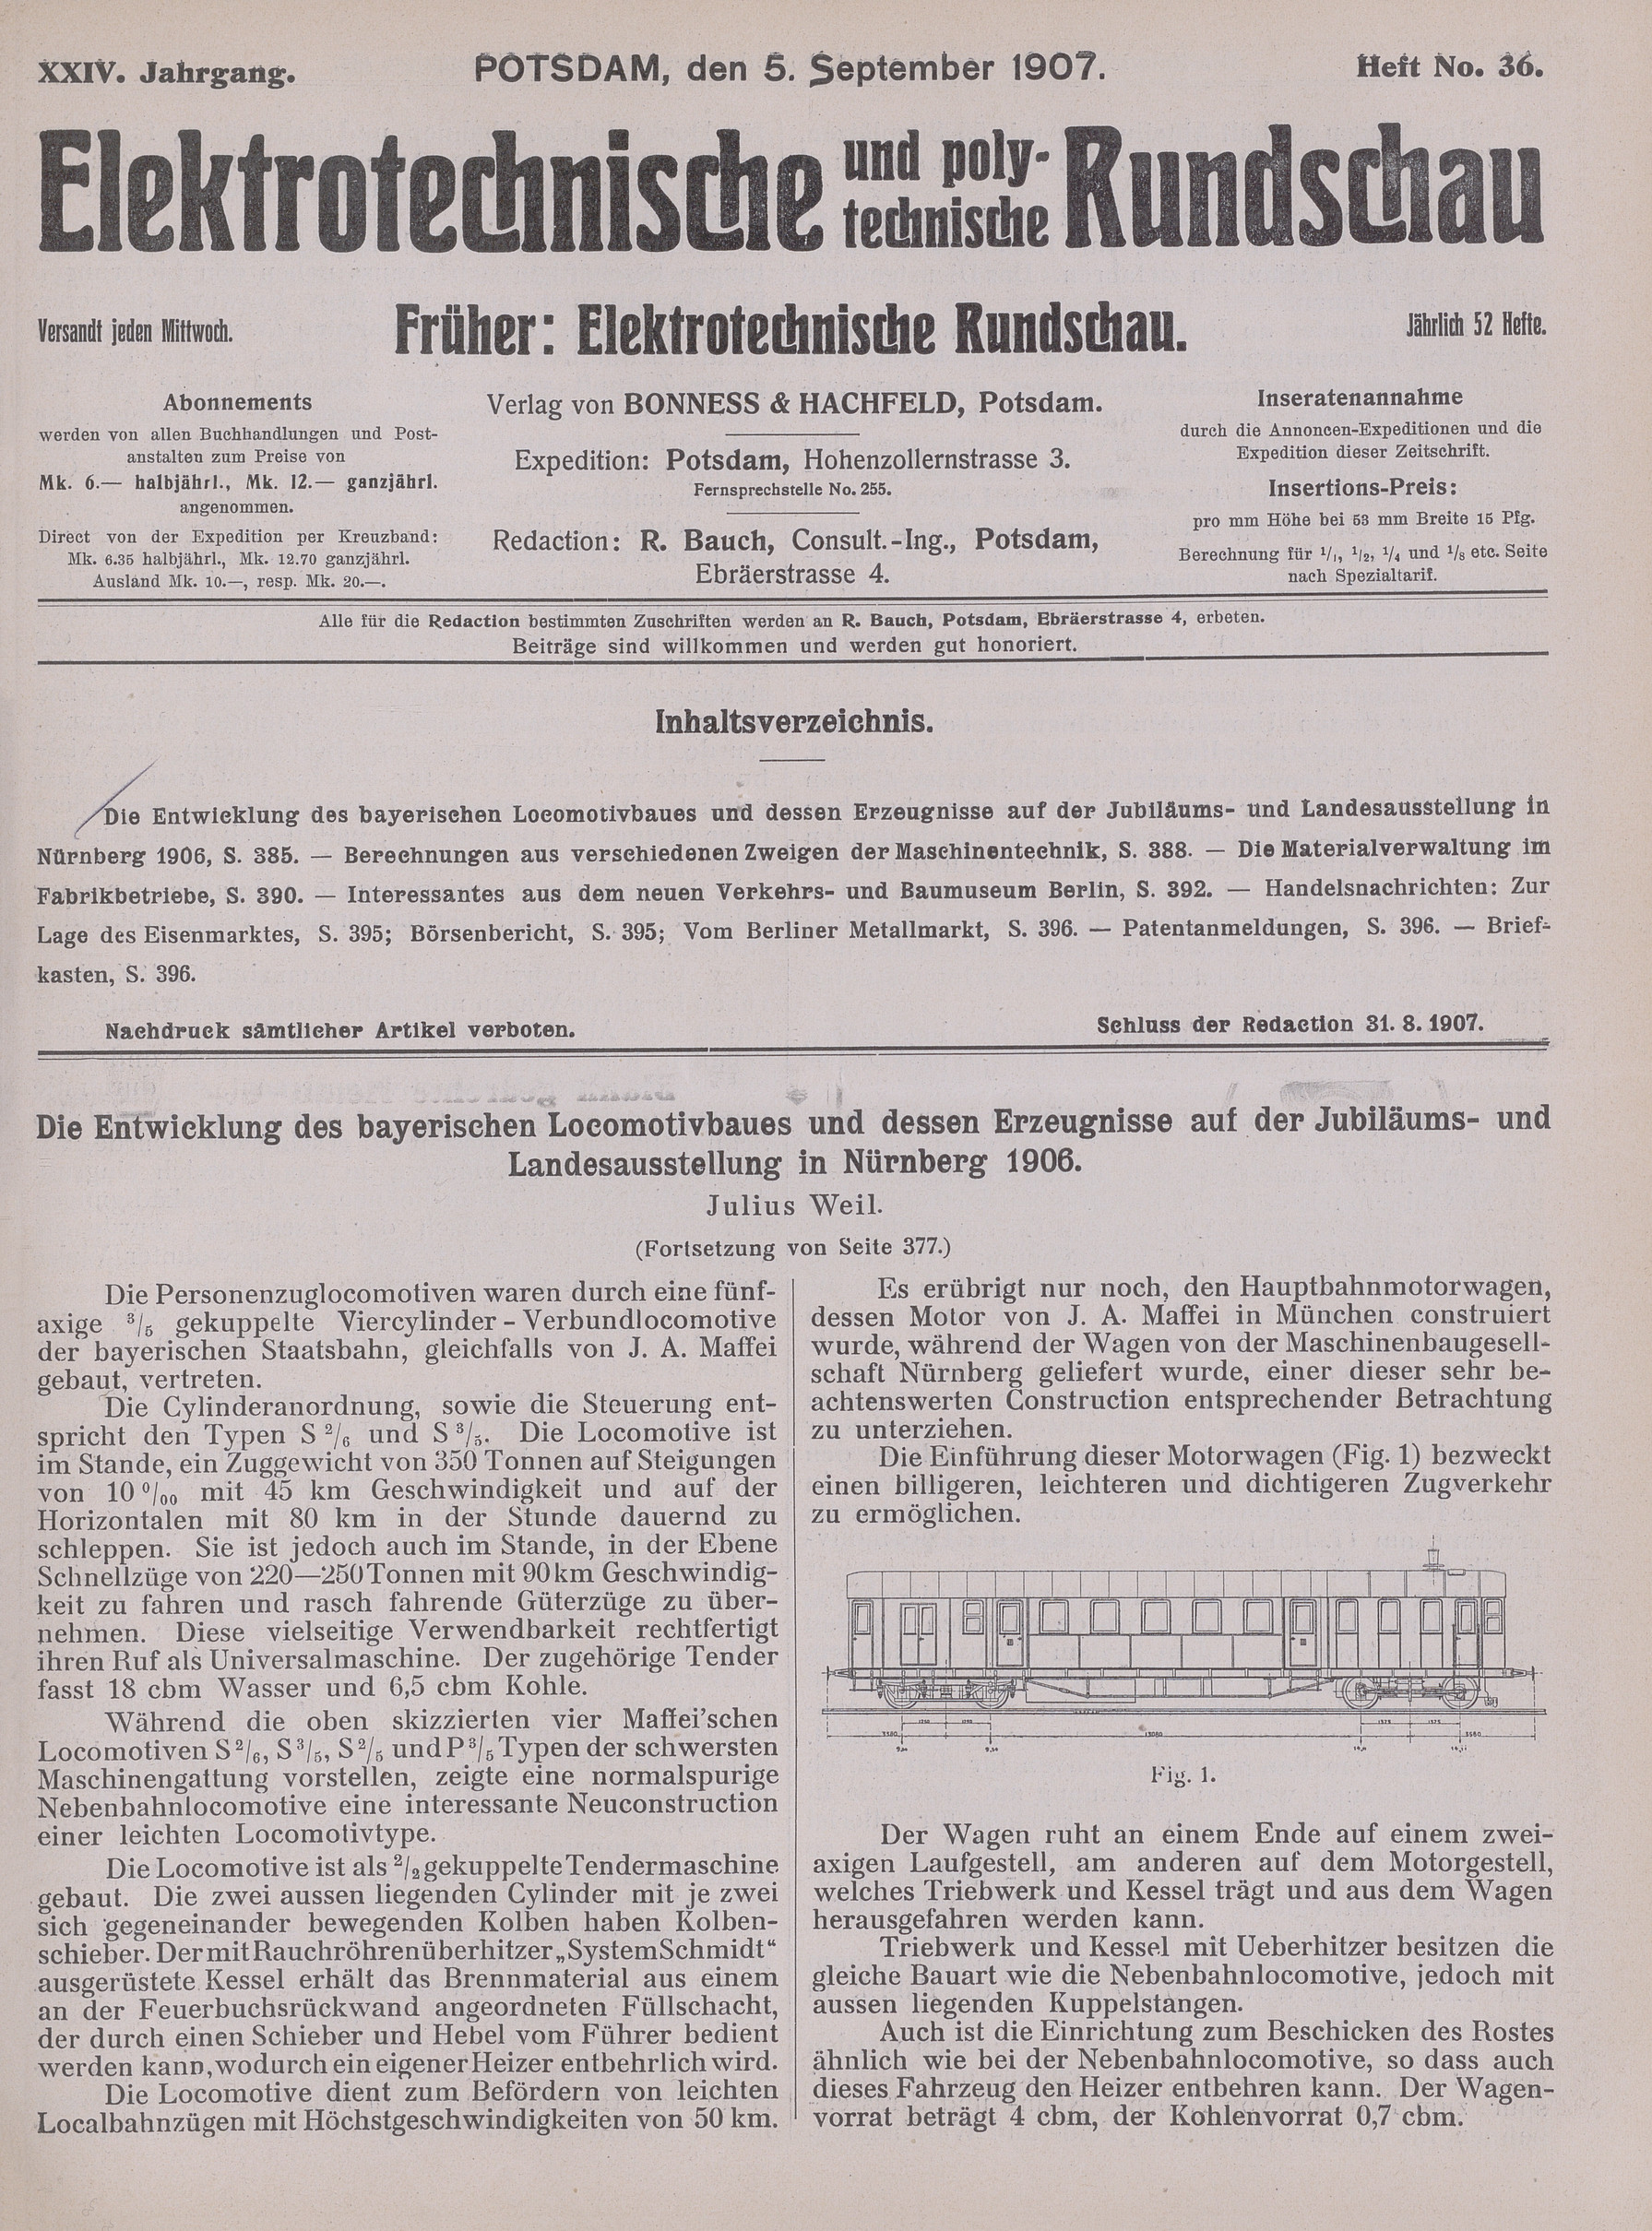 Elektrotechnische und polytechnische Rundschau, XXIV. Jahrgang, Heft No. 36